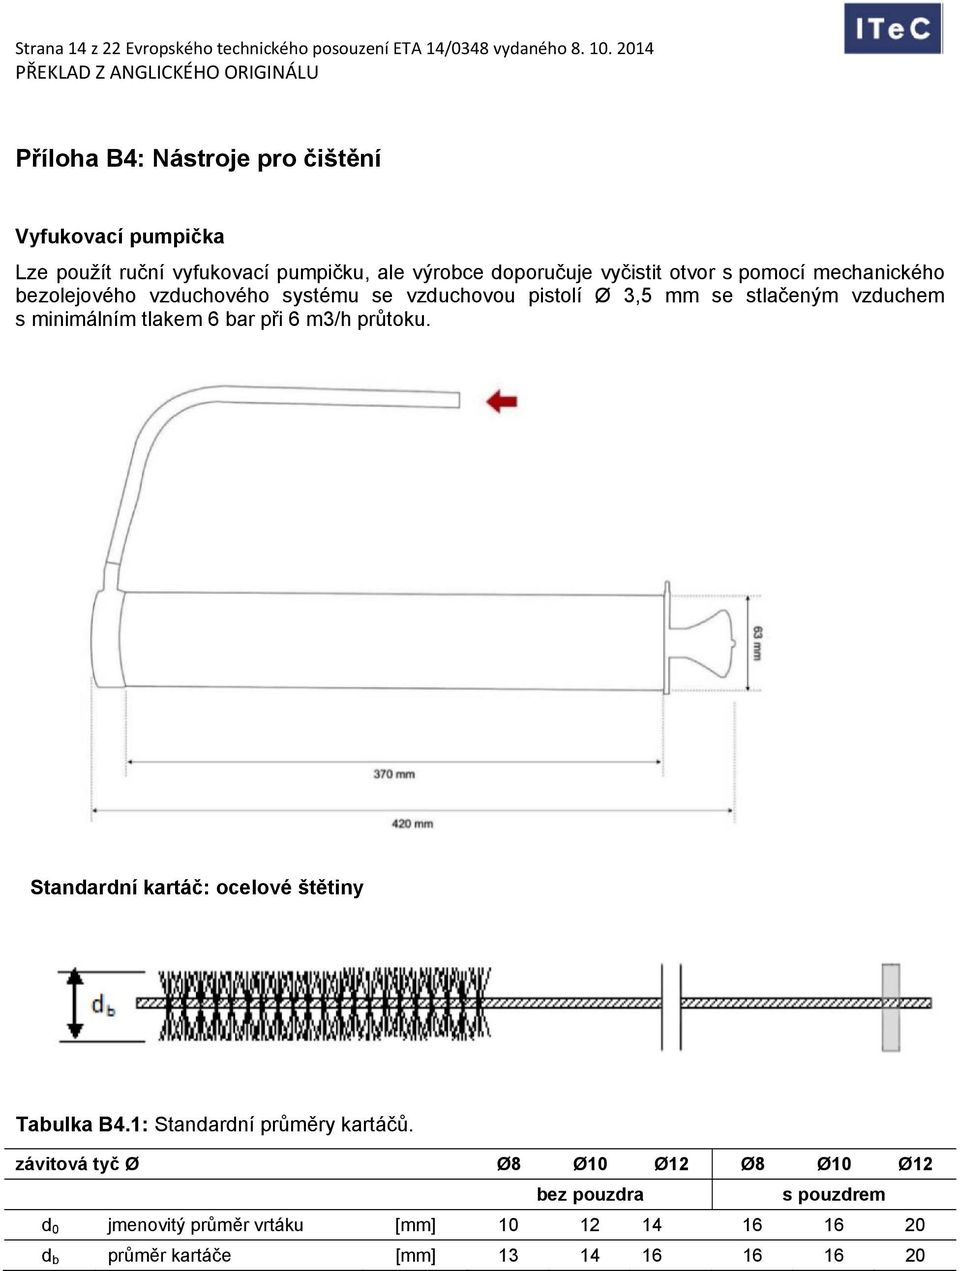 mechanického bezolejového vzduchového systému se vzduchovou pistolí Ø 3,5 mm se stlačeným vzduchem s minimálním tlakem 6 bar při 6 m3/h průtoku.